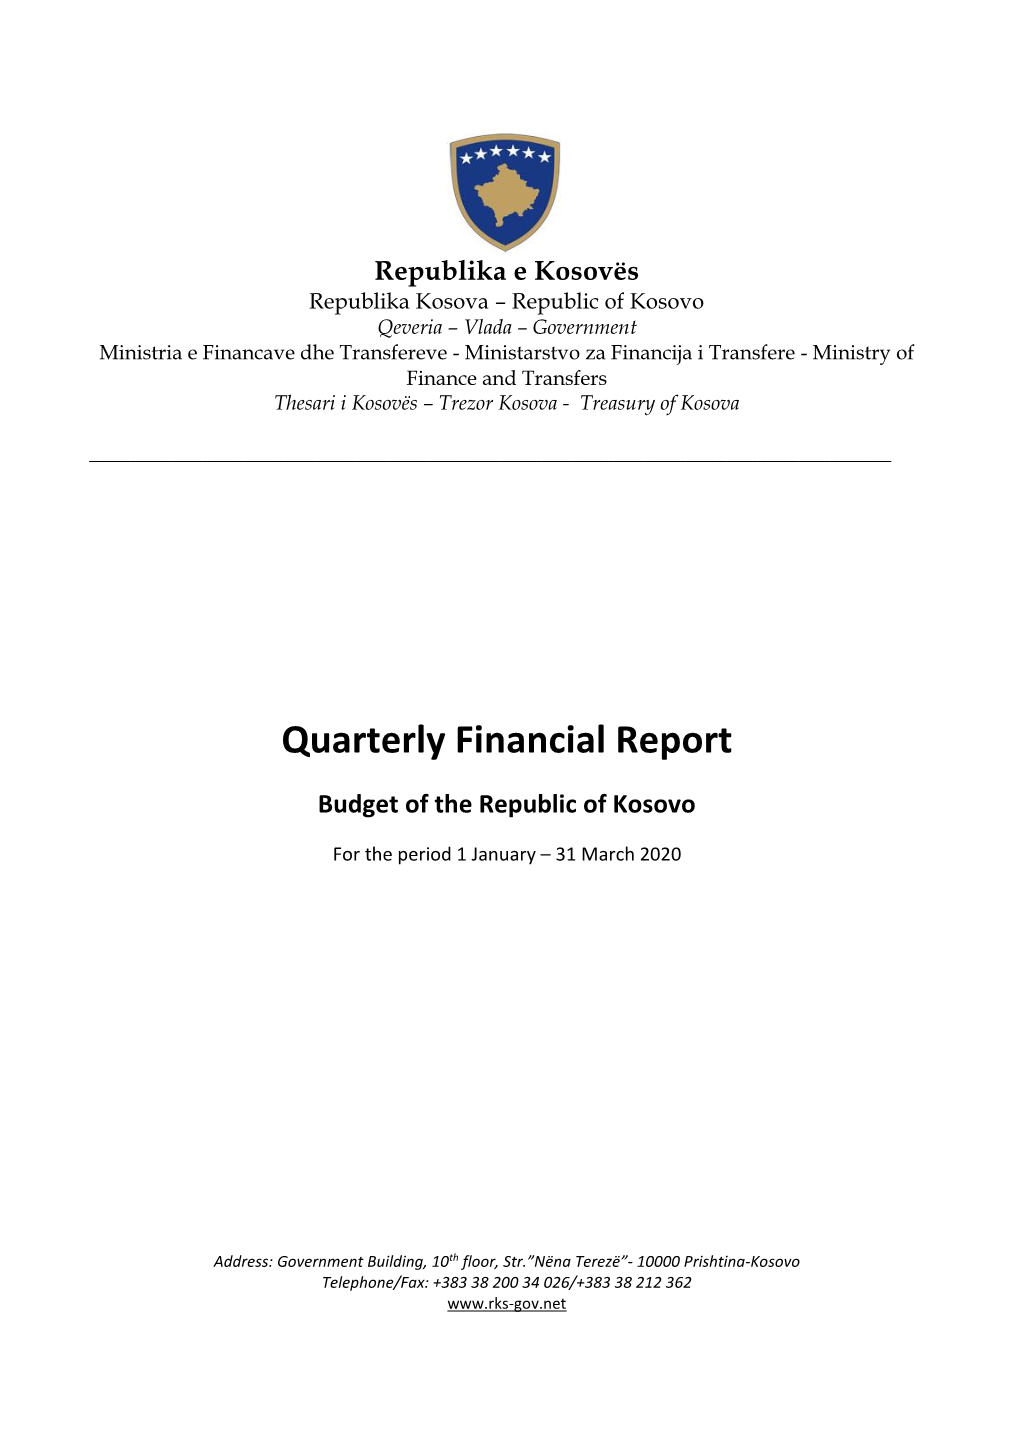 Quarterly Financial Report